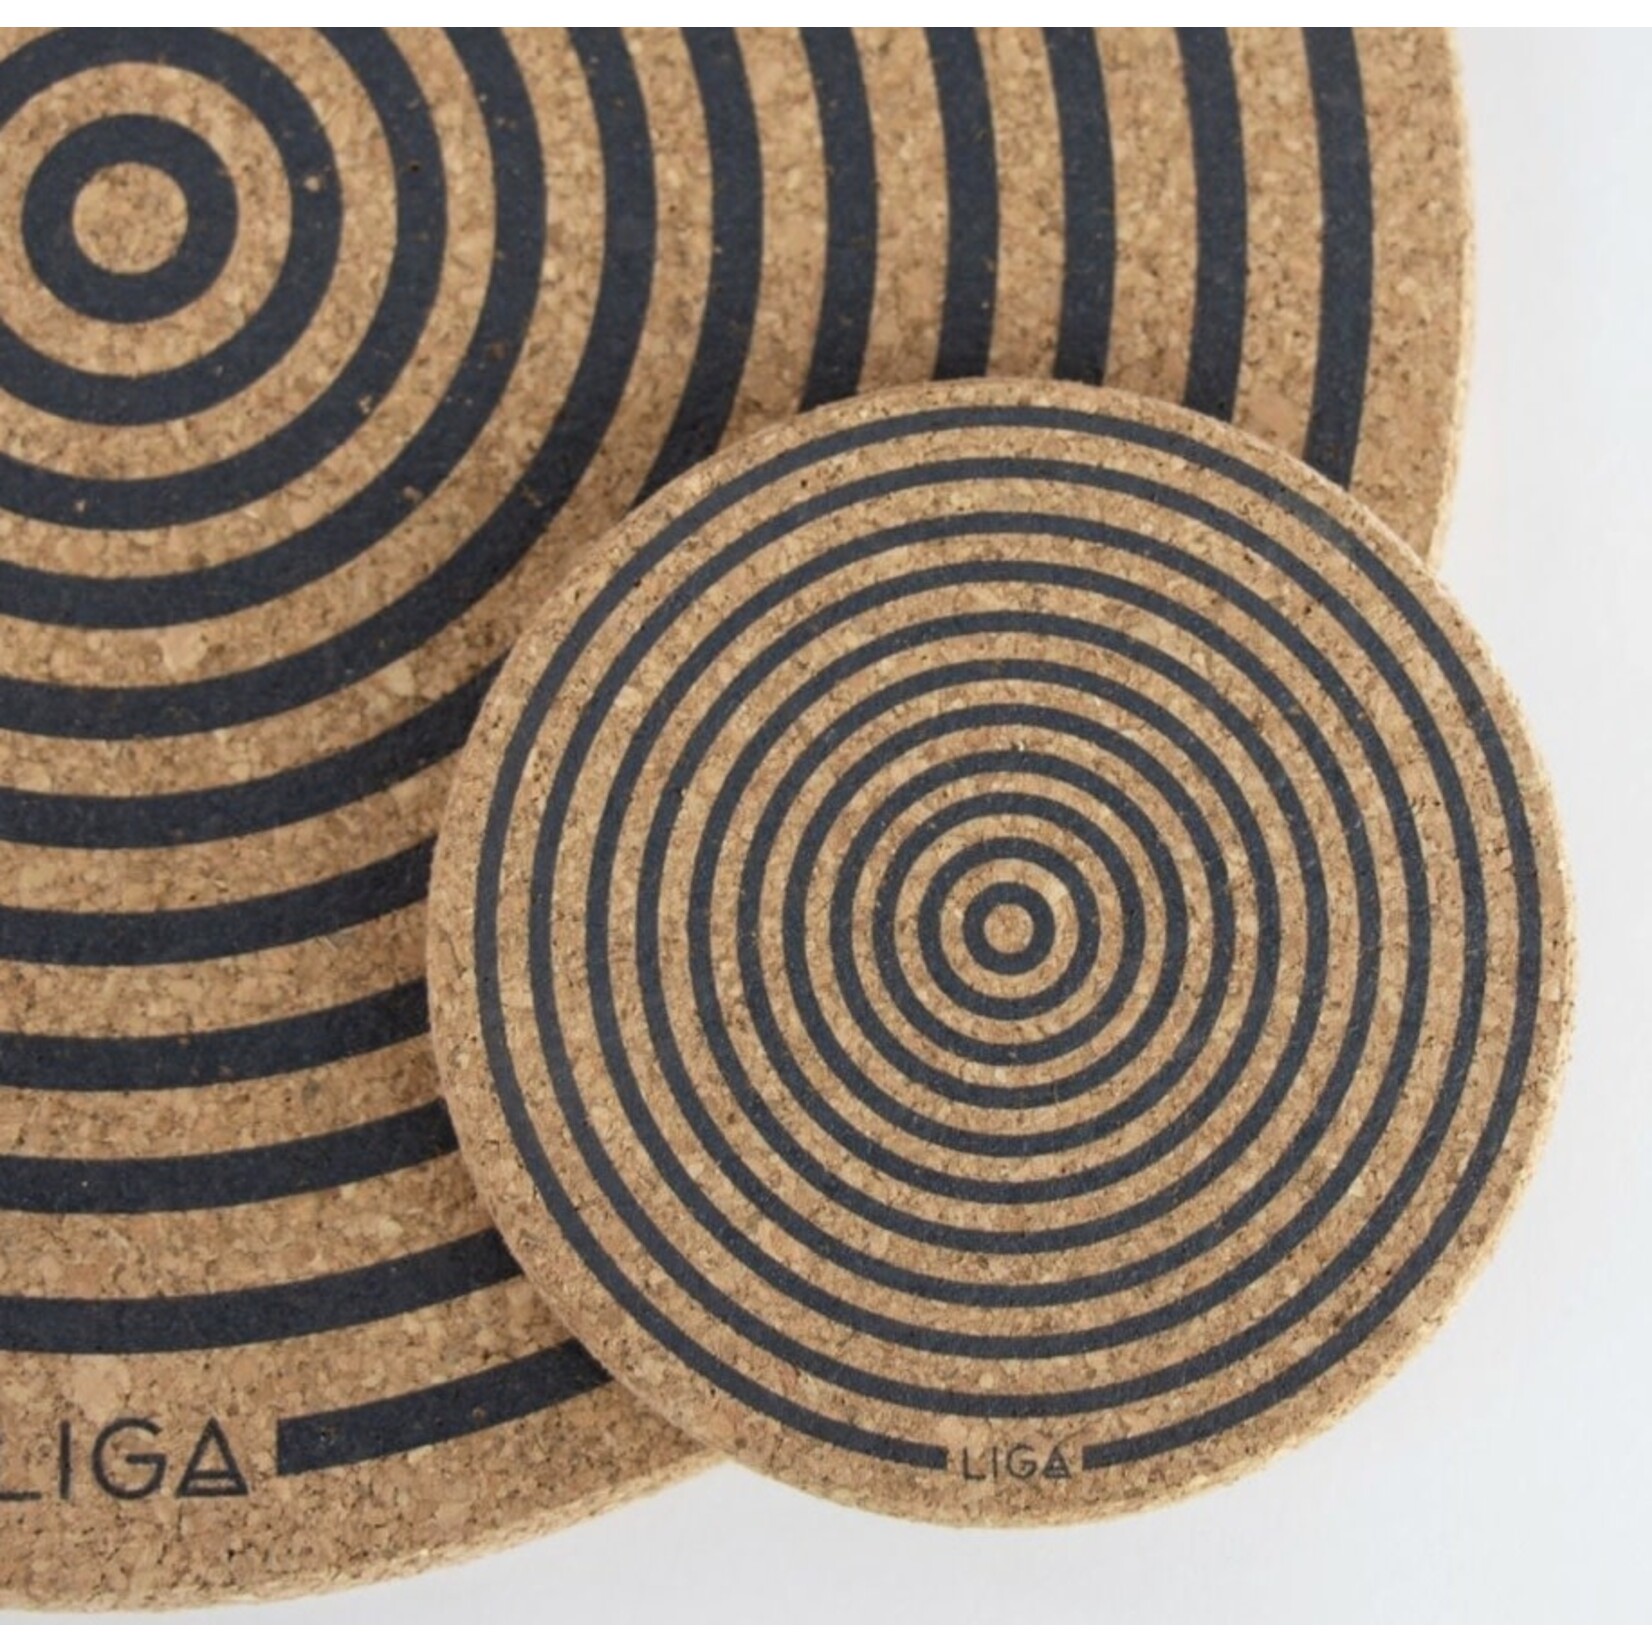 LIGA LIGA Printed Cork Coaster Set-Orbit